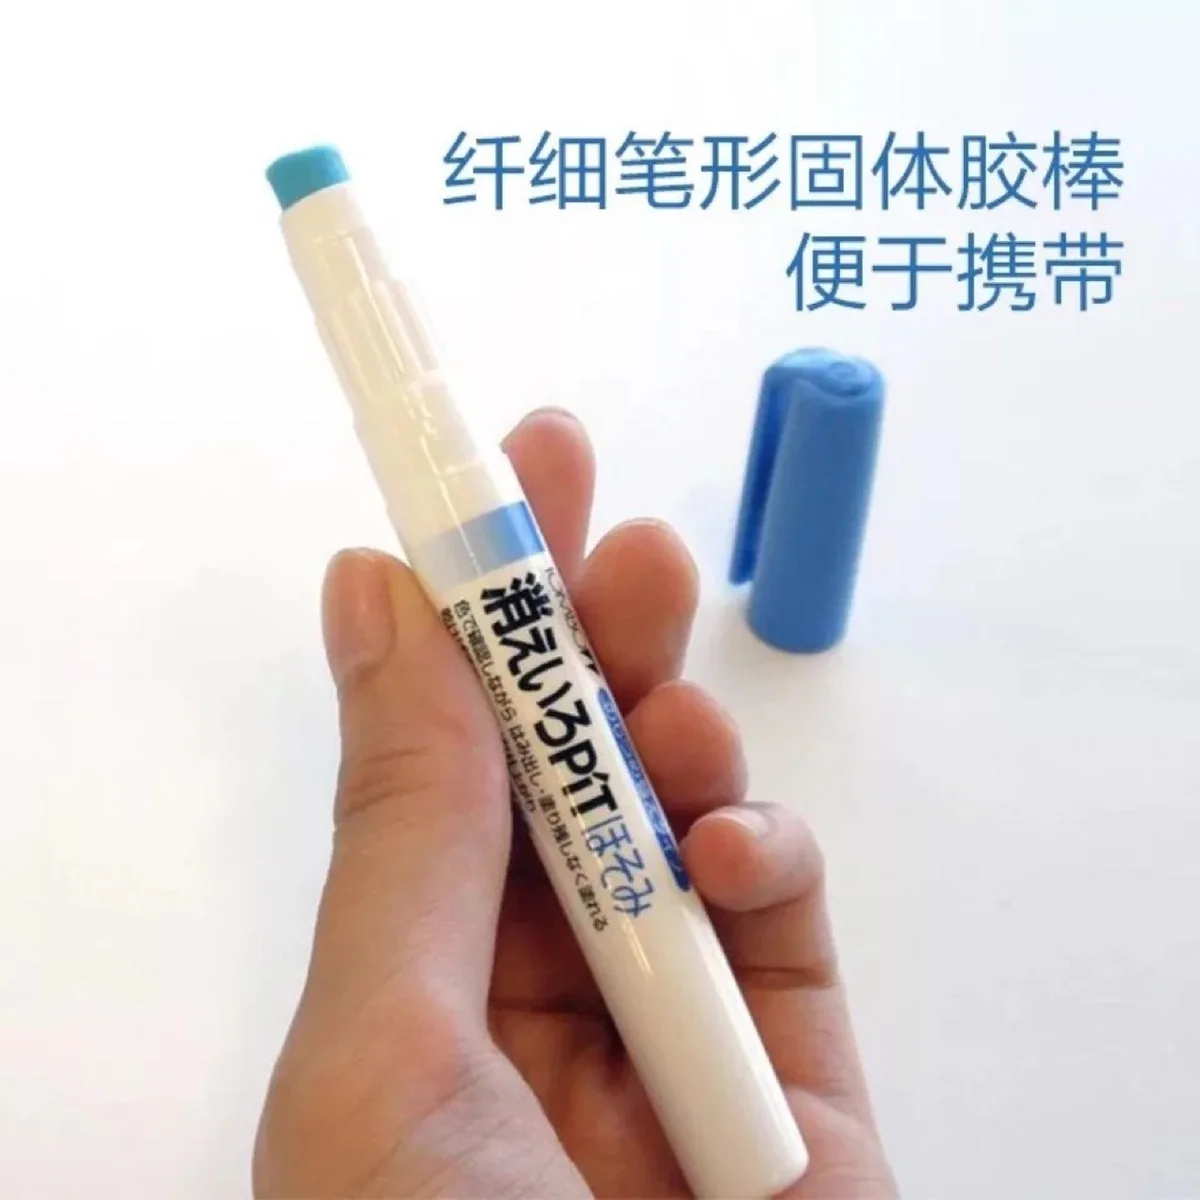 TOMBOW Ручка Форма обесцвечивание клей карандаш быстросохнущий клей ручка для школы офиса сильный супер-клей DIY